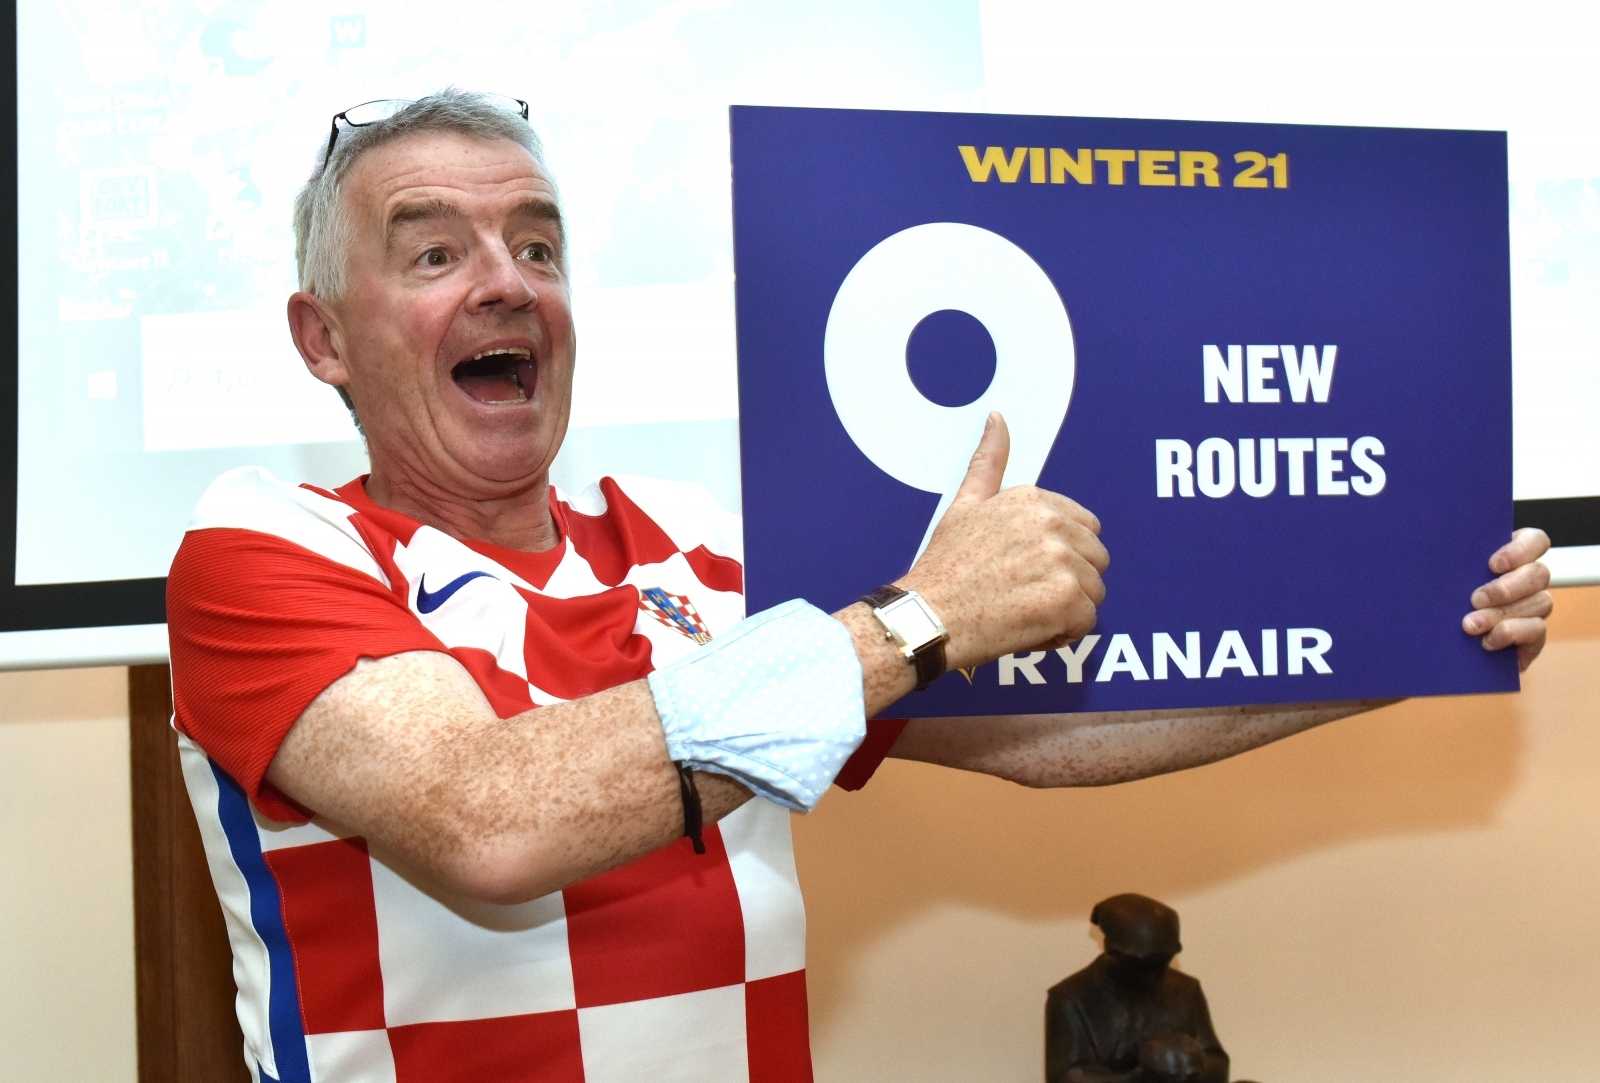 21.09.2021., Zagreb - Michael O'Leary iz Ryanaira predstavio je devet novih odredista iz Zagreba.
Photo: Davorin Visnjic/PIXSELL